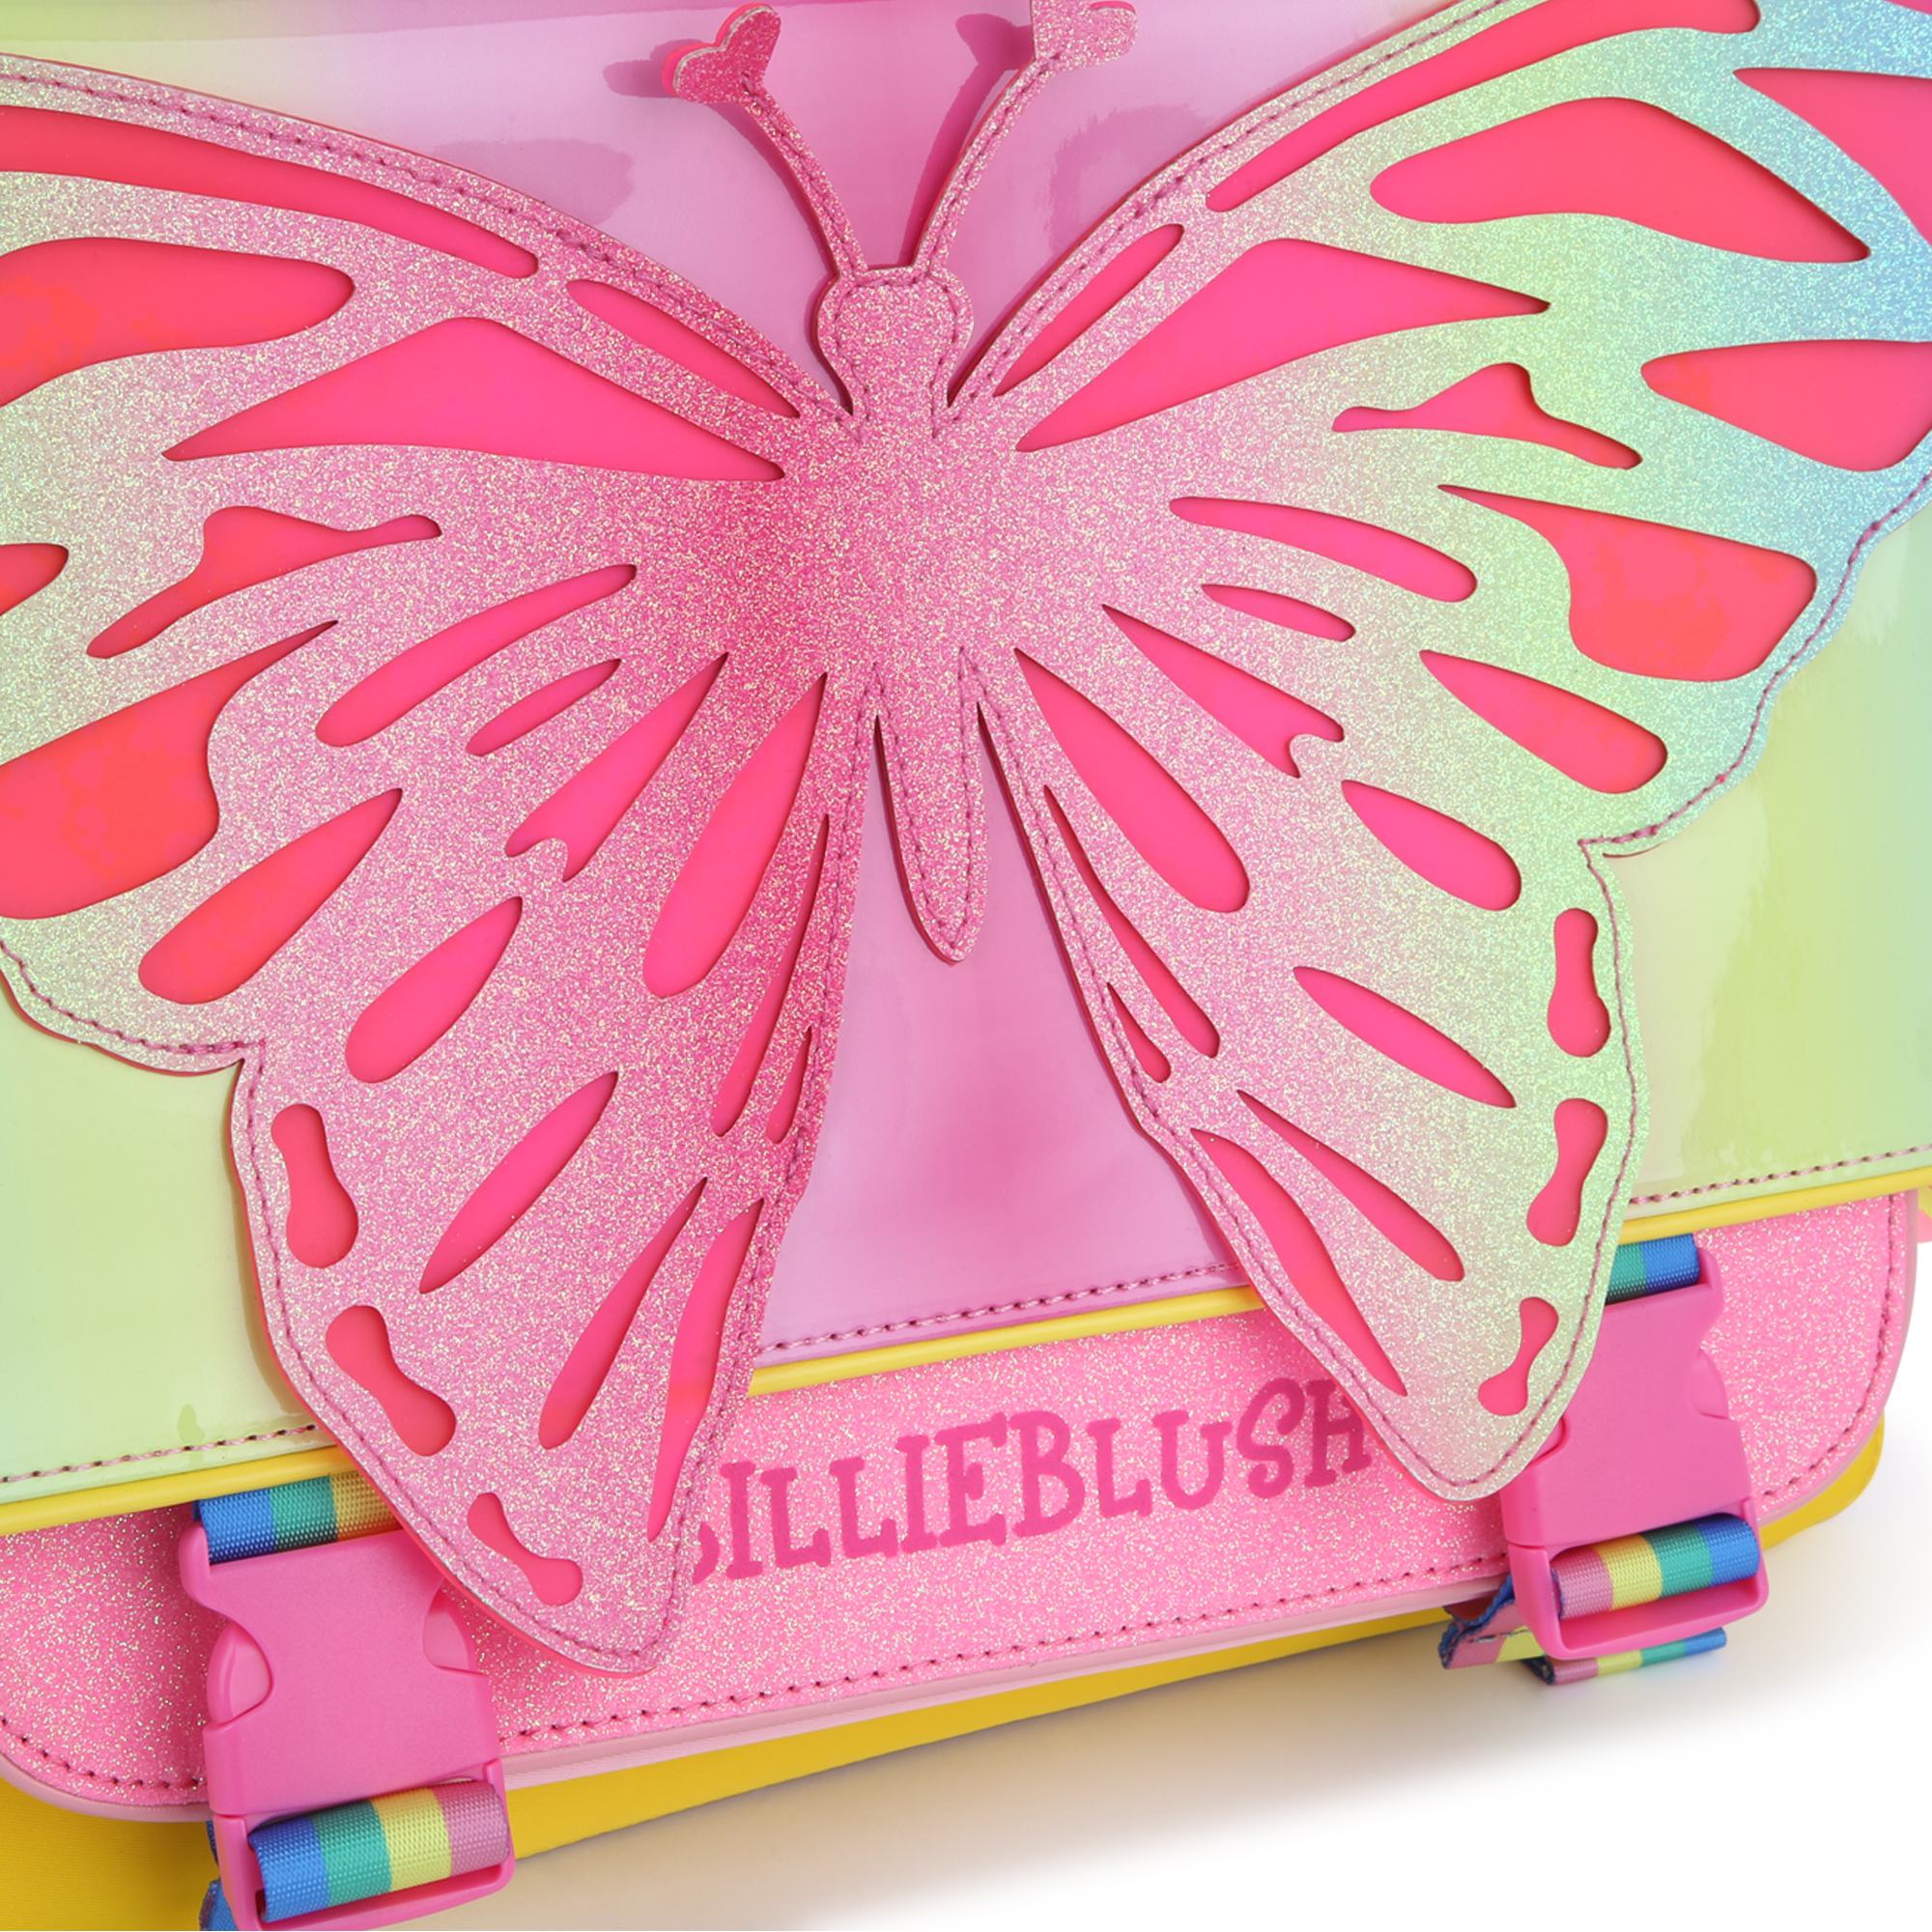 Schultasche mit Schmetterling und Pailletten BILLIEBLUSH Für MÄDCHEN